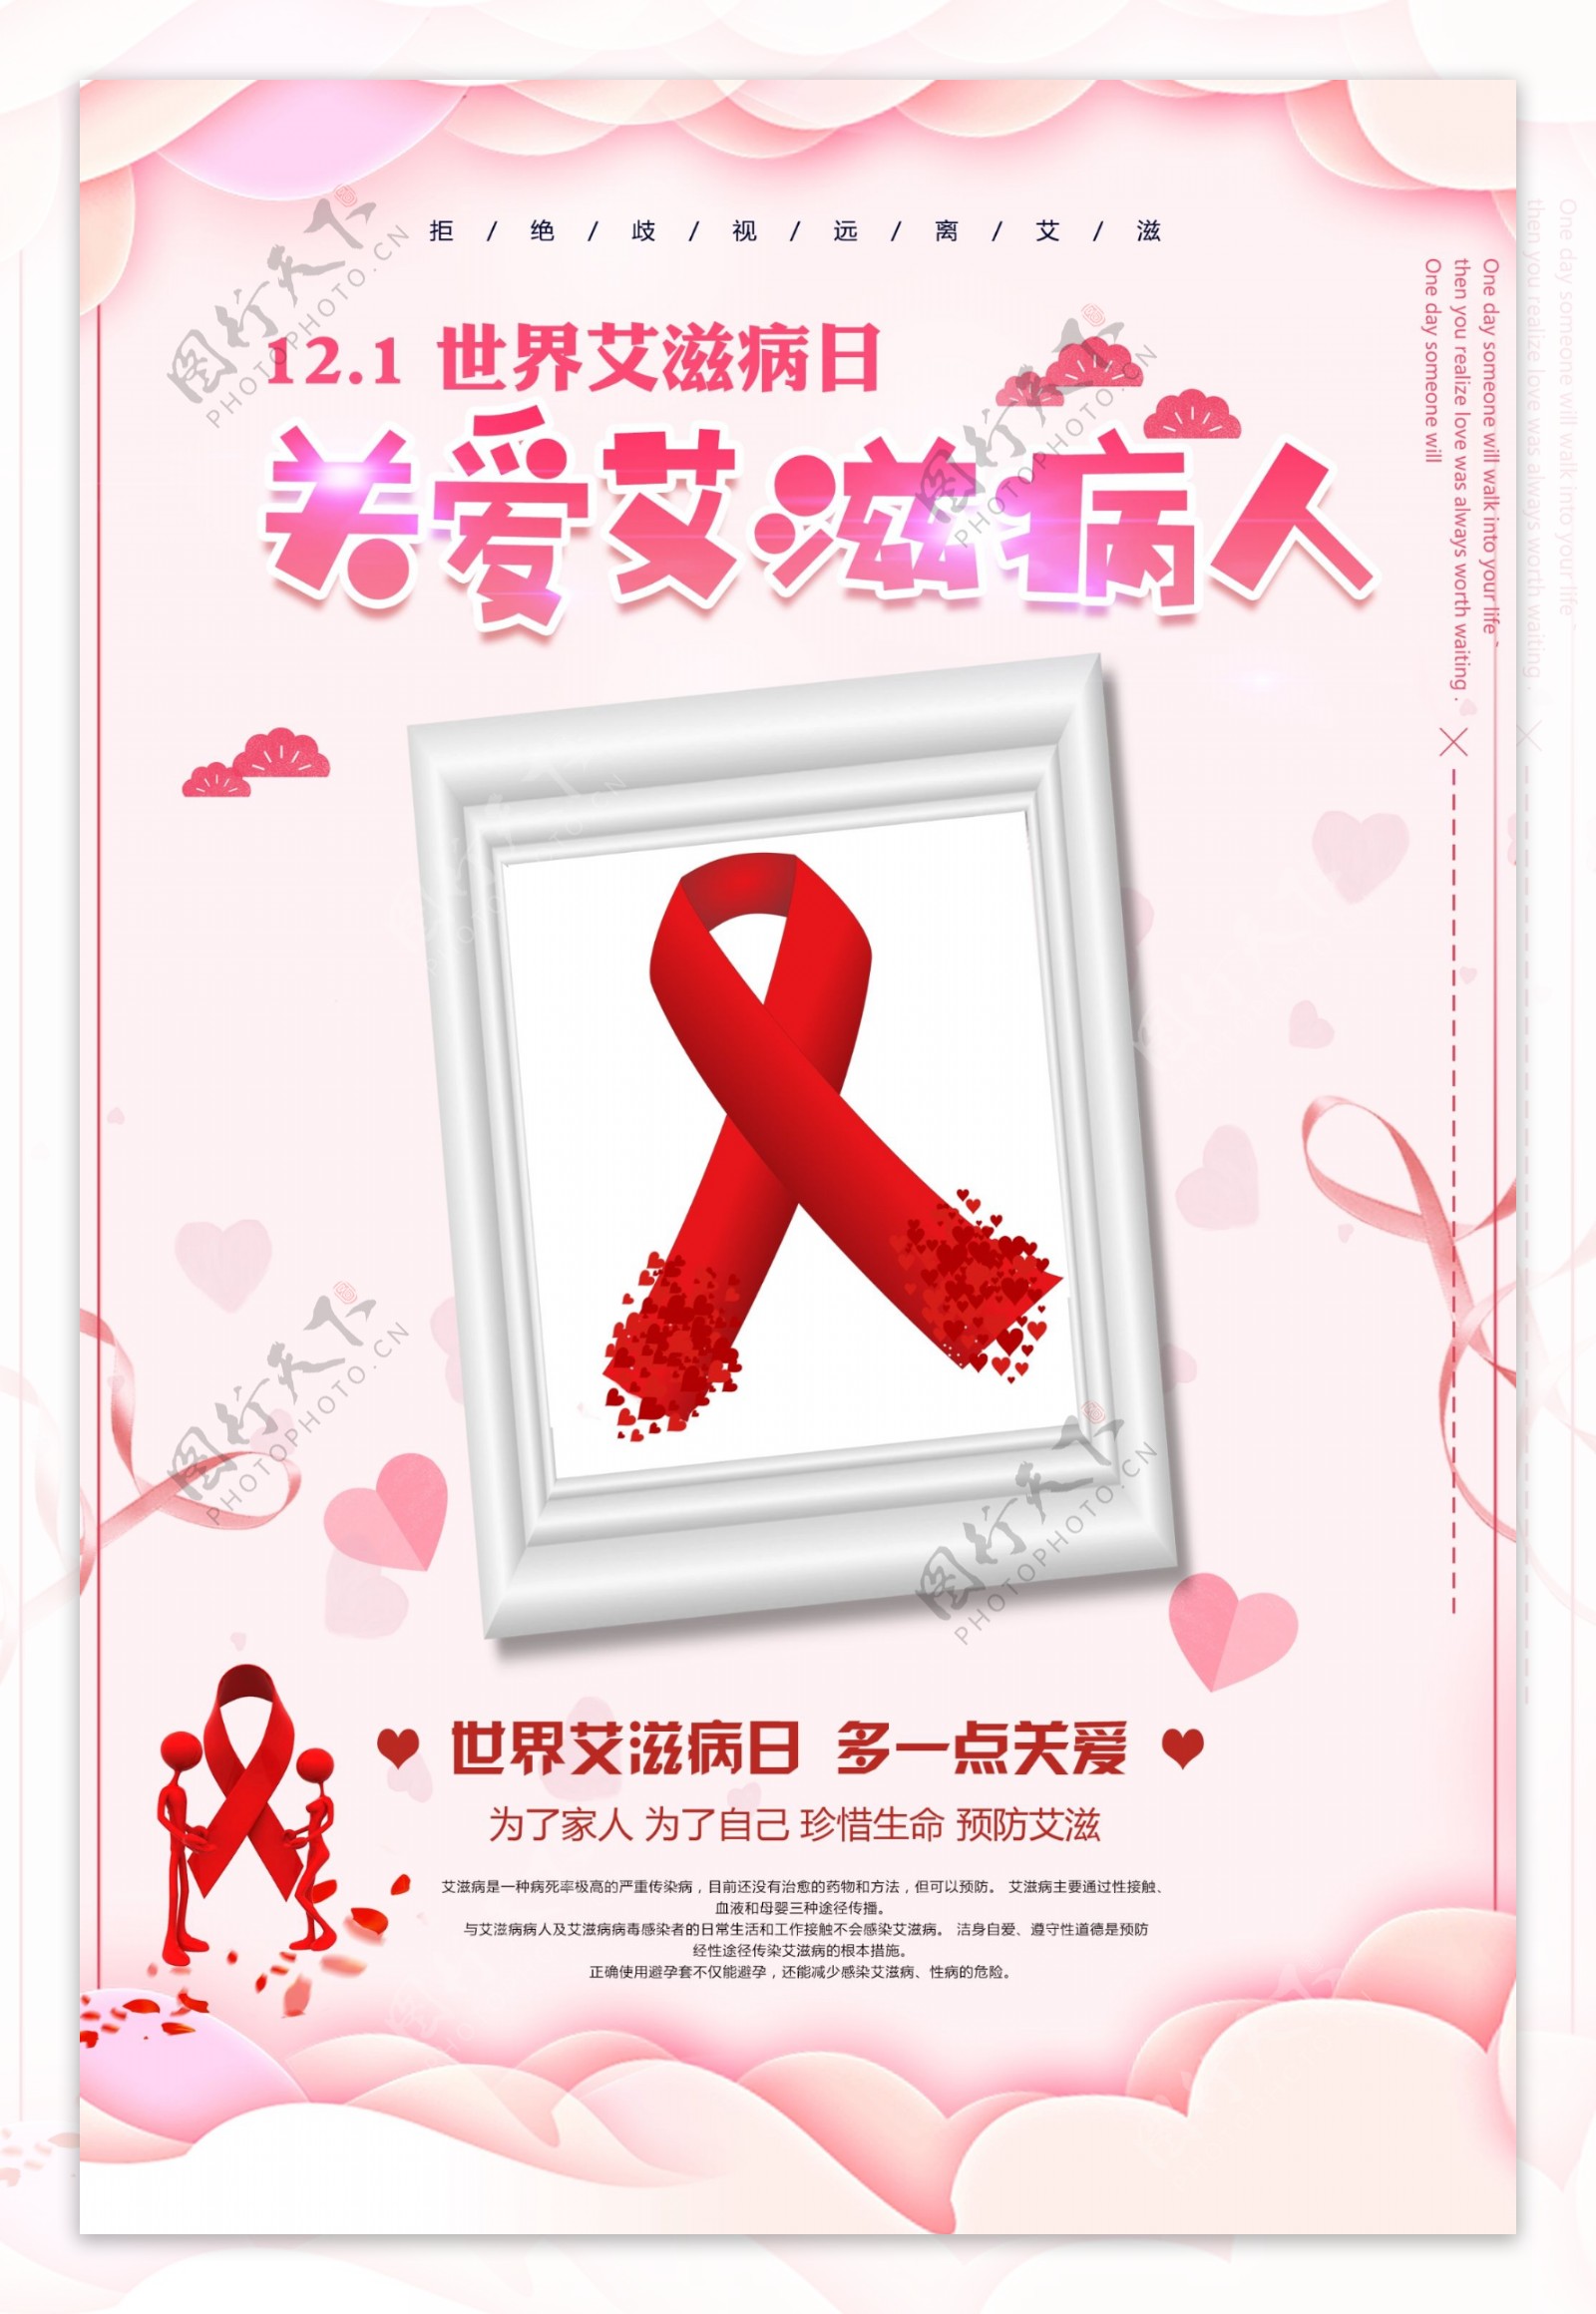 剪纸风艾滋病公益海报